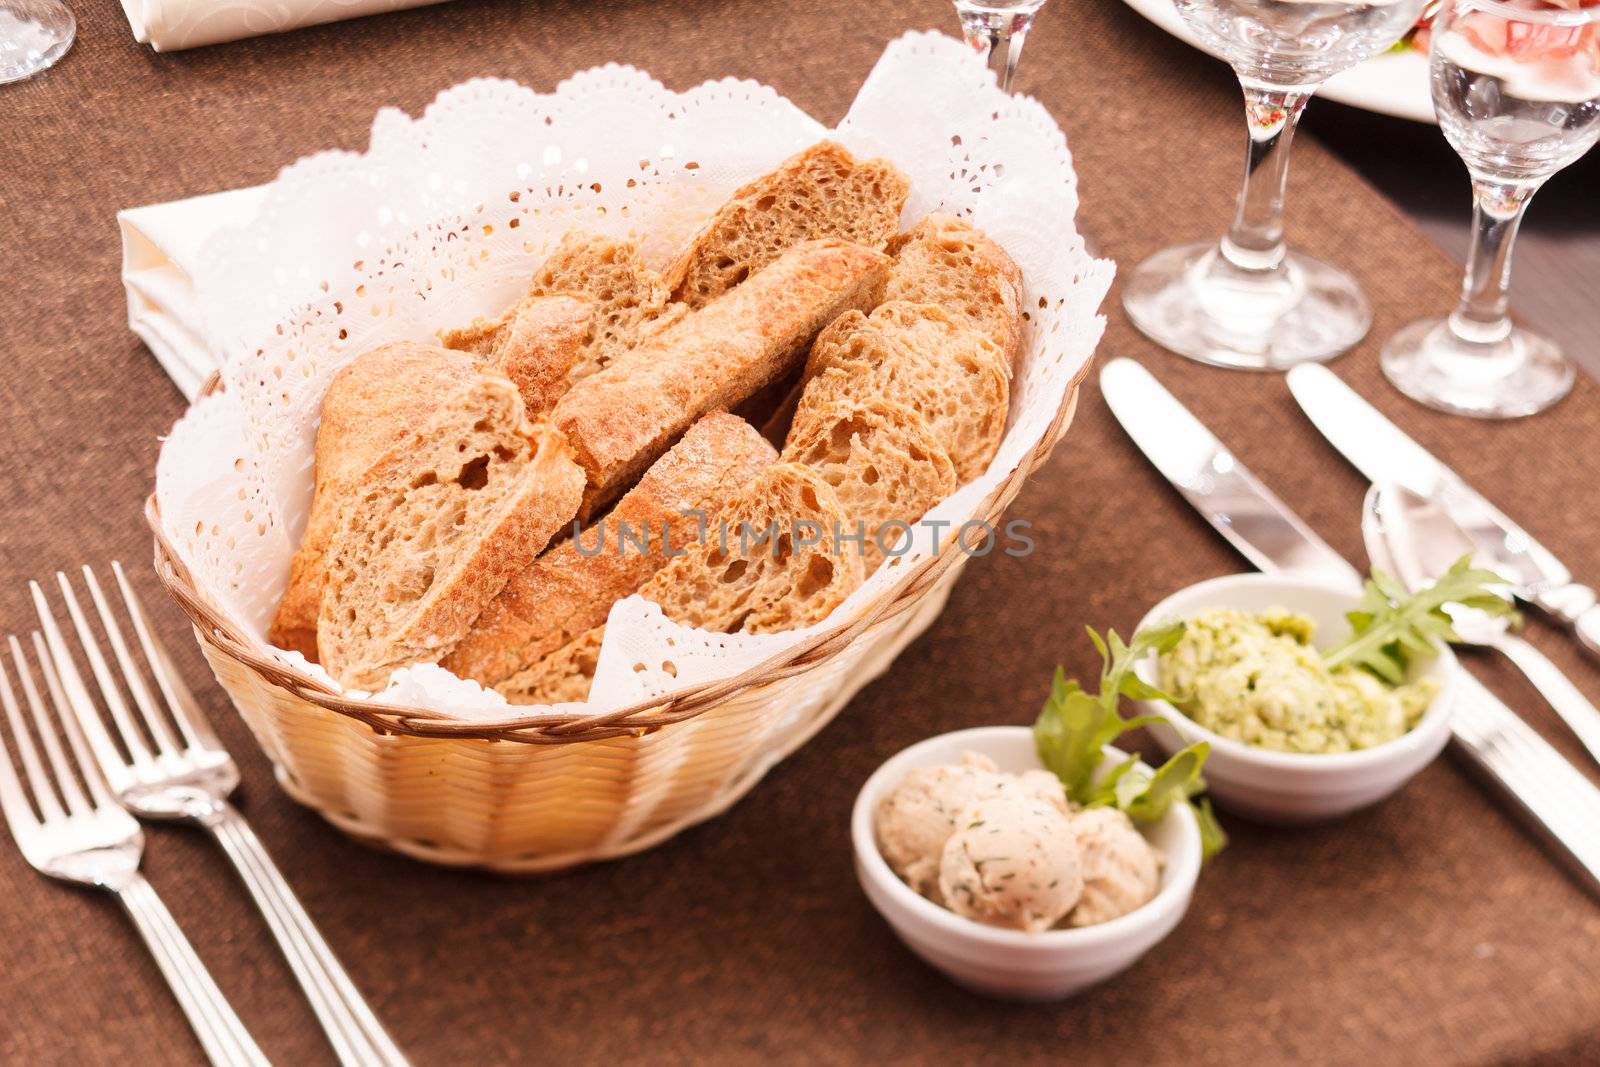  fresh crusty bread in a basket  by shebeko